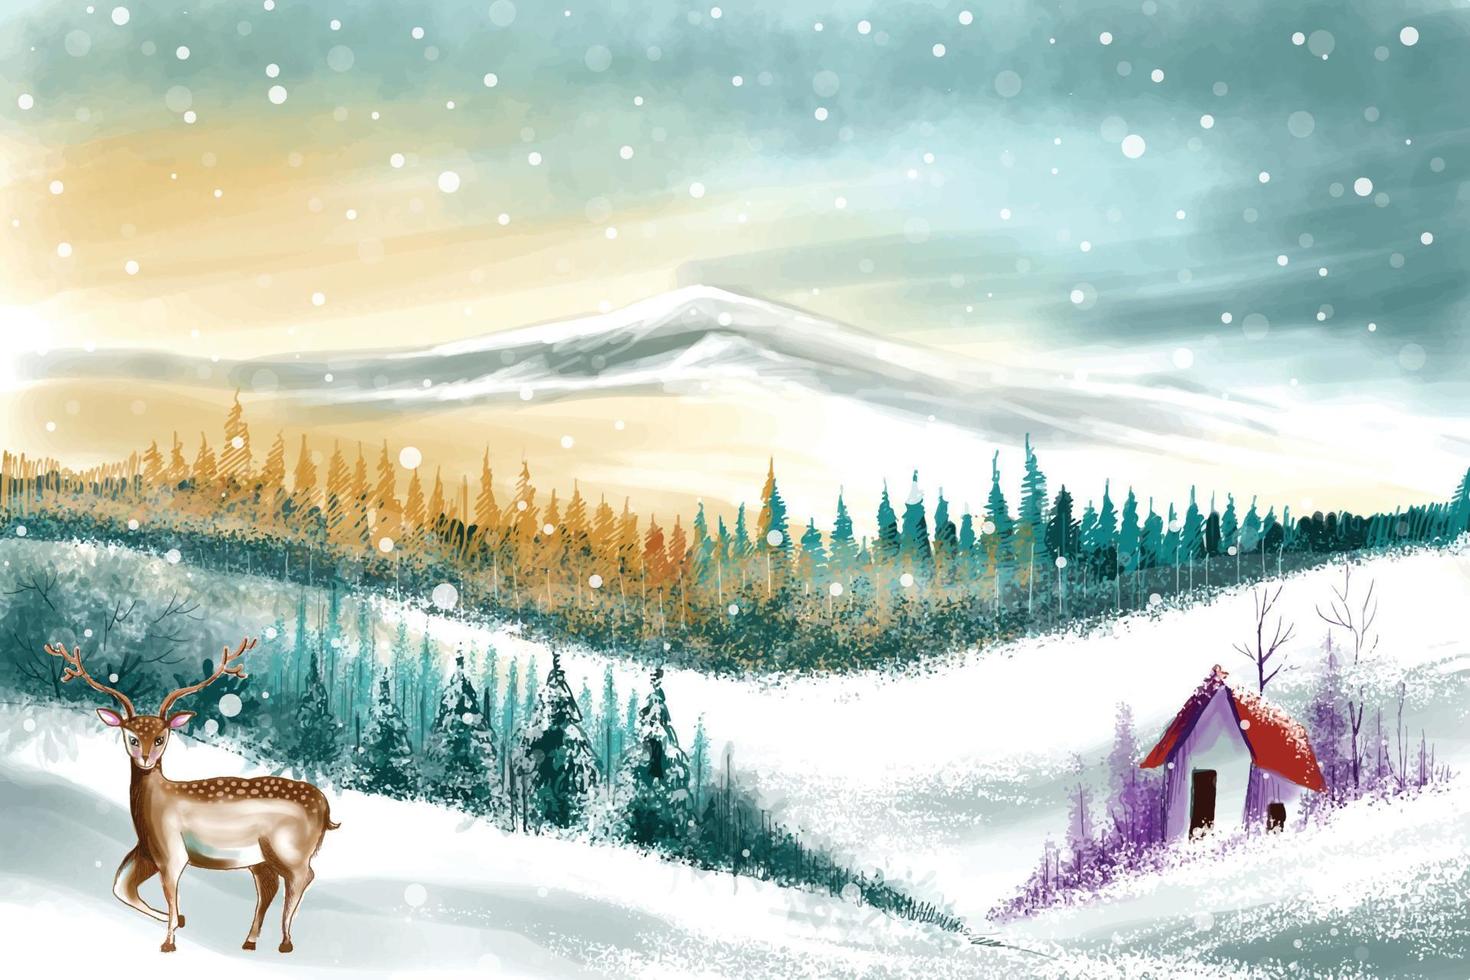 landschaft für winter- und neujahrsferien weihnachtskartenhintergrund vektor